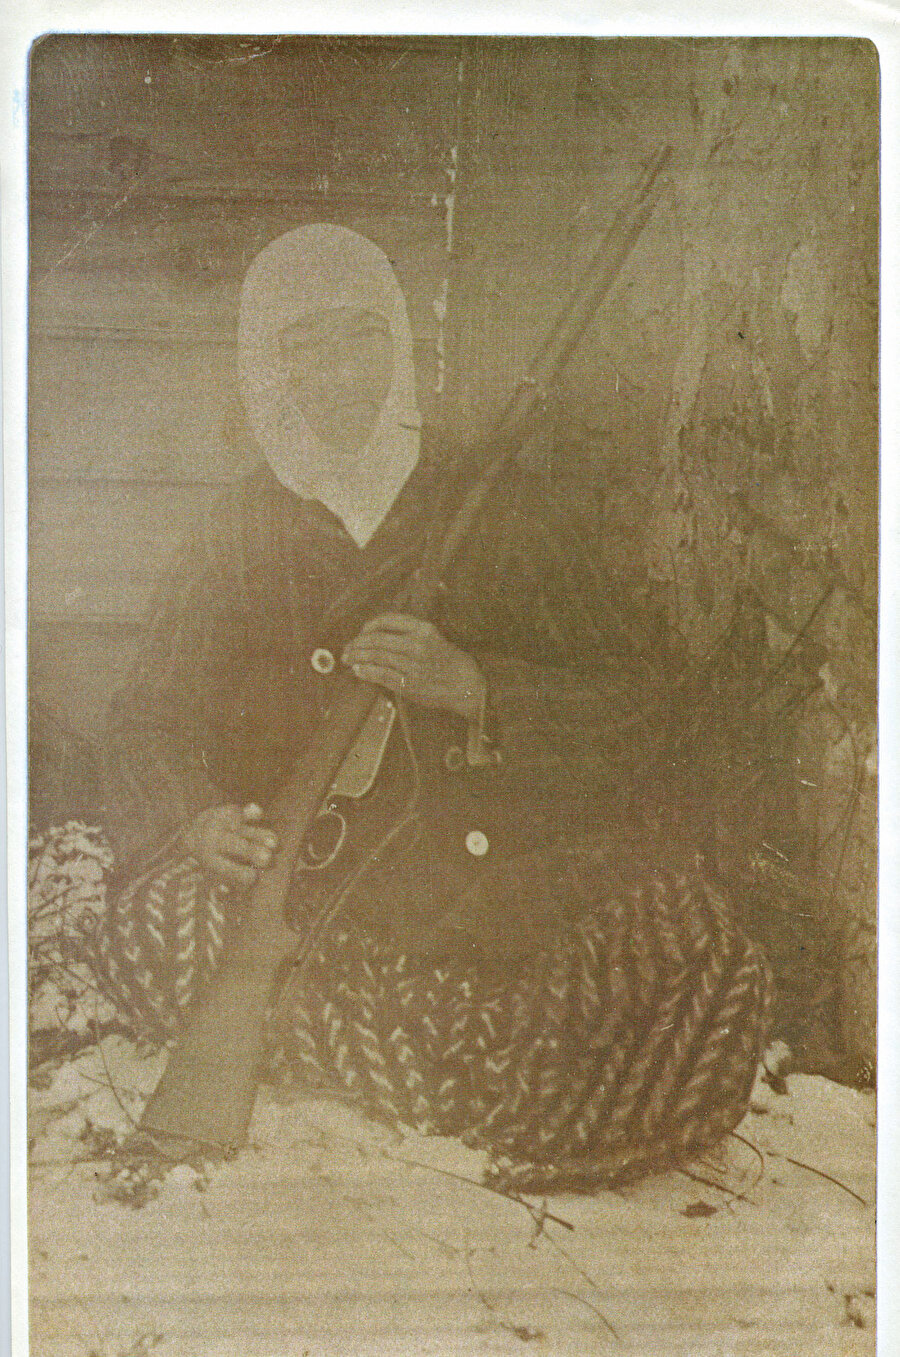 » Eli silahlı bir saraylı...Deli Halid Paşa’nın annesi Kalipsu Hatun’un ölmeden önceki son fotoğrafı ilk kez yayınlanıyor.